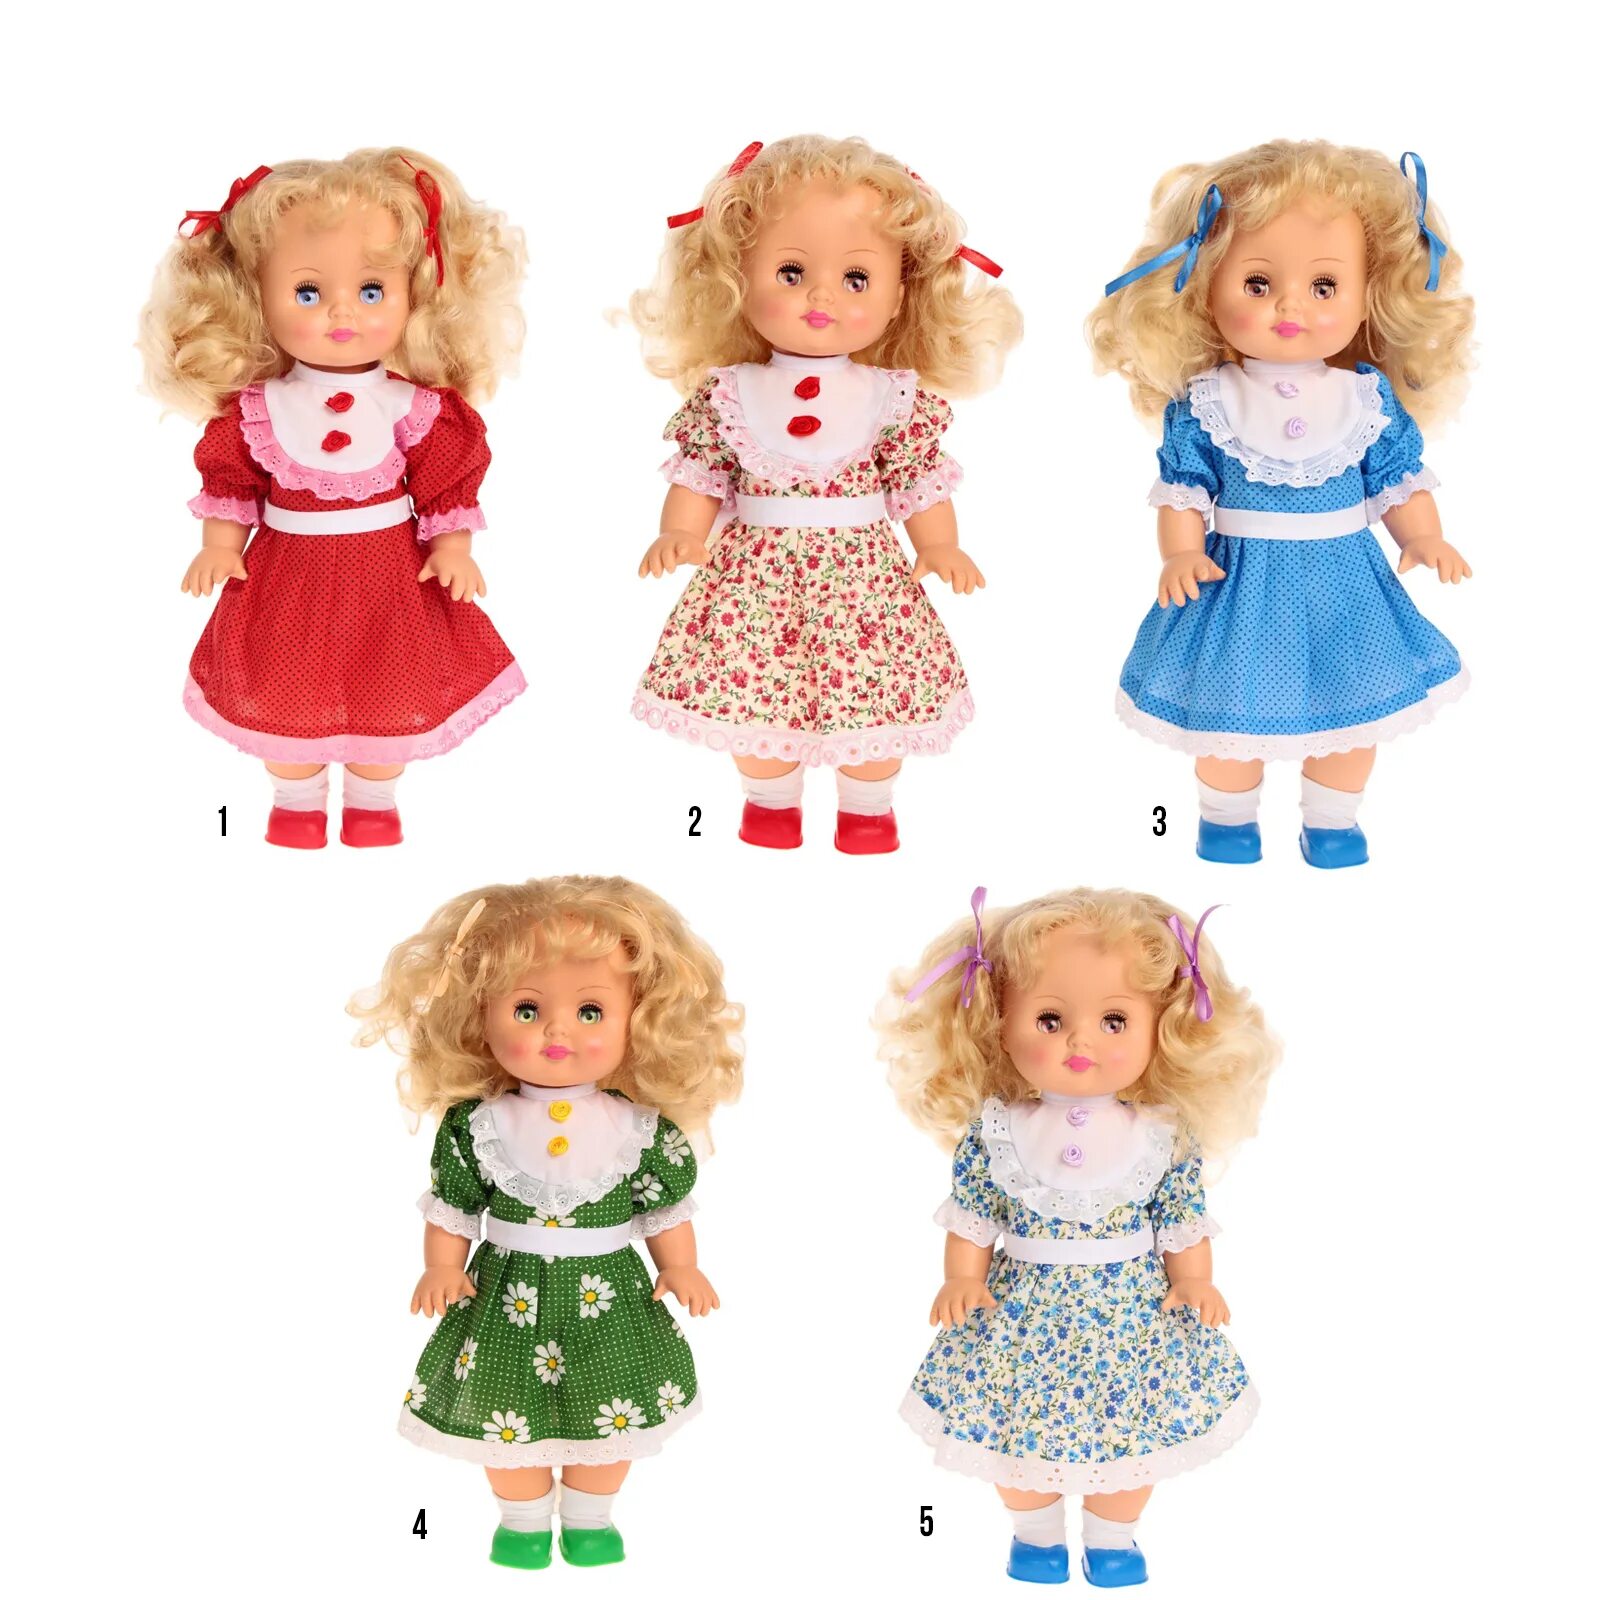 Куклы купить омск. Дешевые куклы. Детские игрушки куклы. Фабричные куклы. Фабрика игрушек куклы.